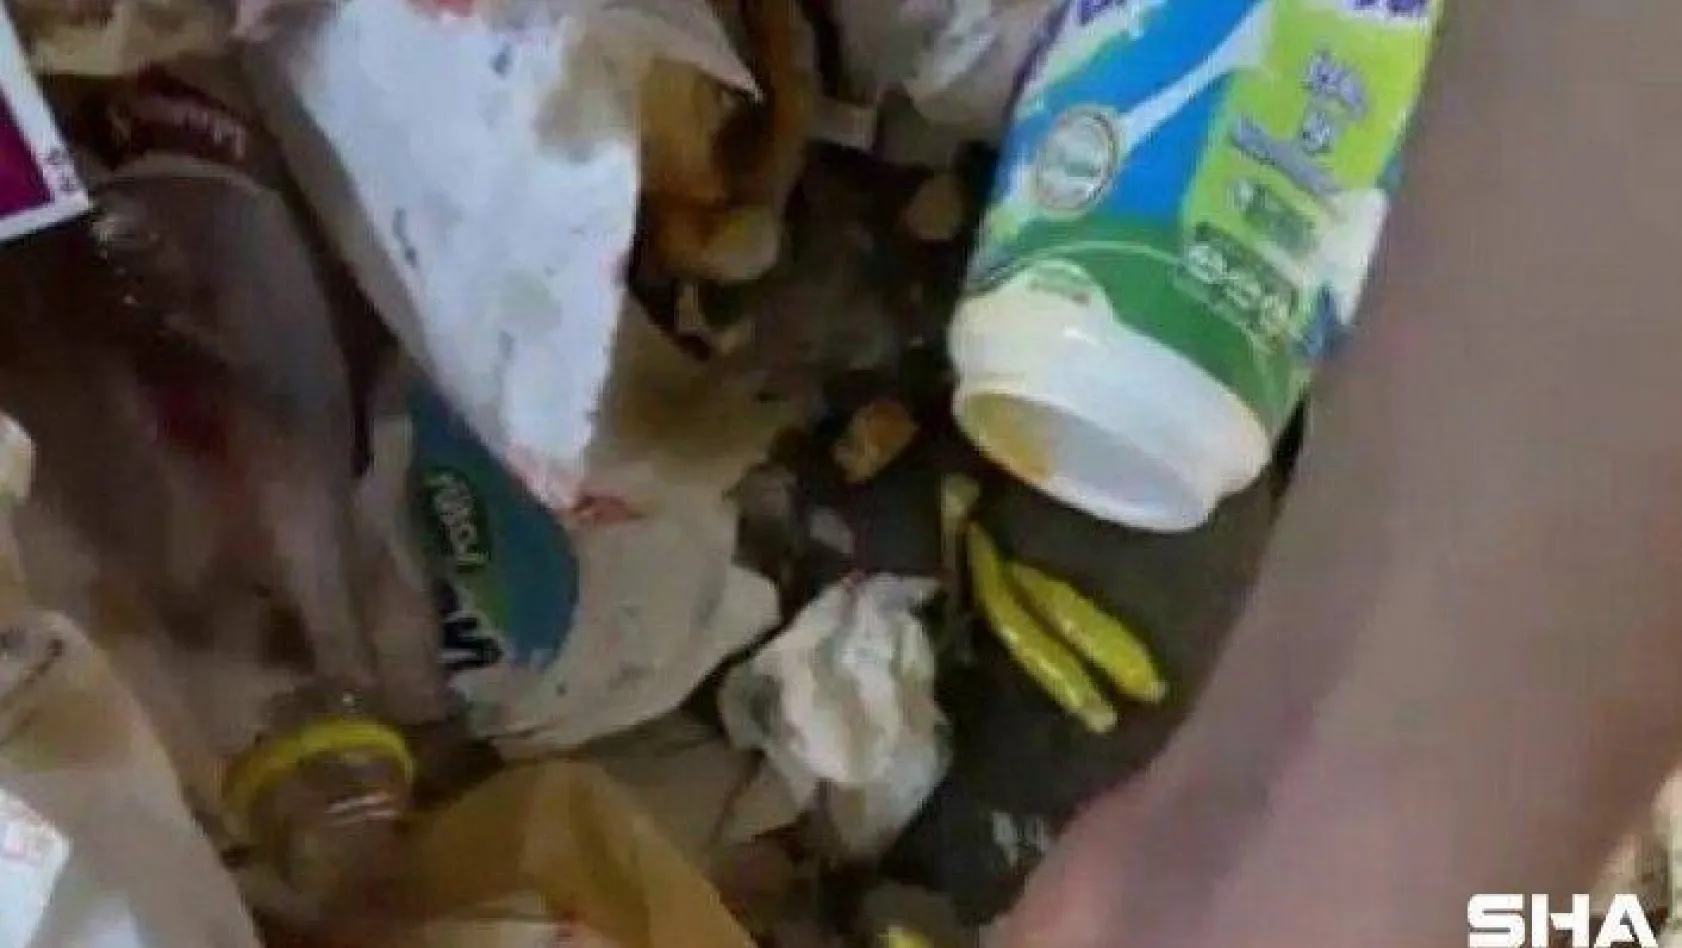 Kadıköy'de tantunicide çöpe dökülen biberleri toplayıp tekrar müşteriye sundular